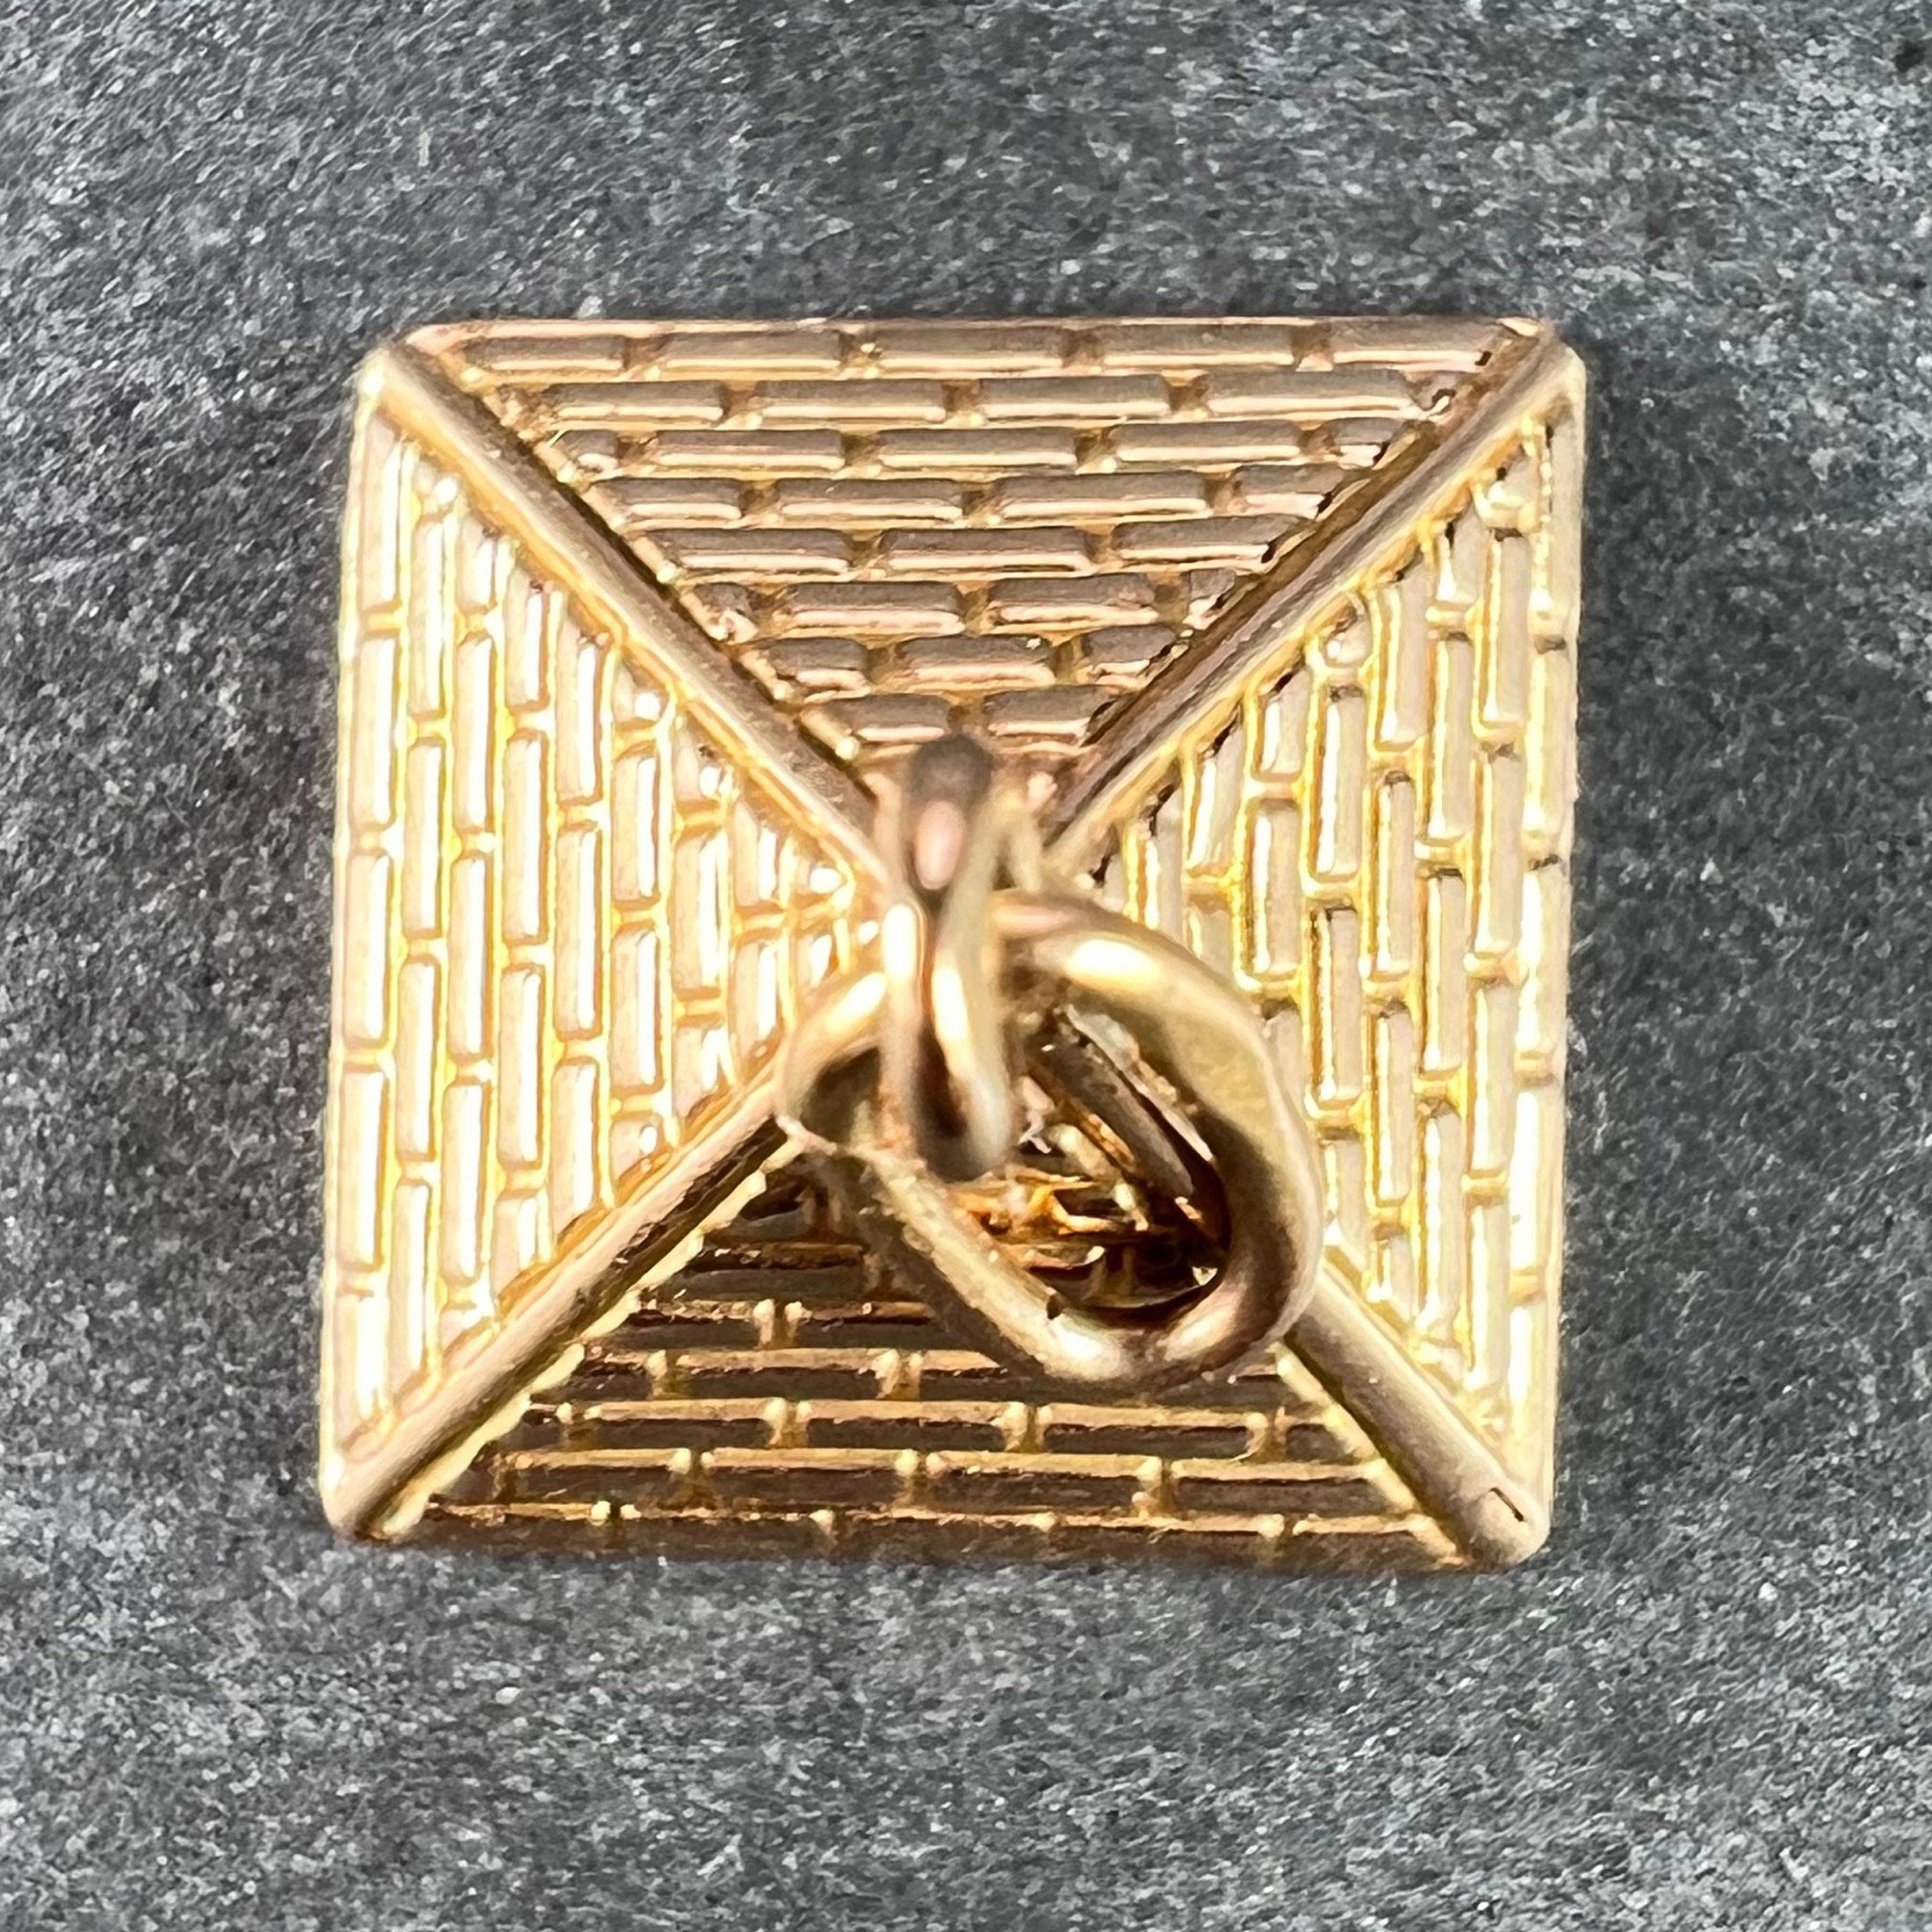  Pendentif à breloques en or rose 18 carats (18K) conçu comme une pyramide égyptienne. Estampillé avec les marques égyptiennes pour l'or 18 carats.
 
Dimensions : 1 x 1,2 x 1,2 cm (sans l'anneau de saut) : 1 x 1,2 x 1,2 cm (sans anneau de